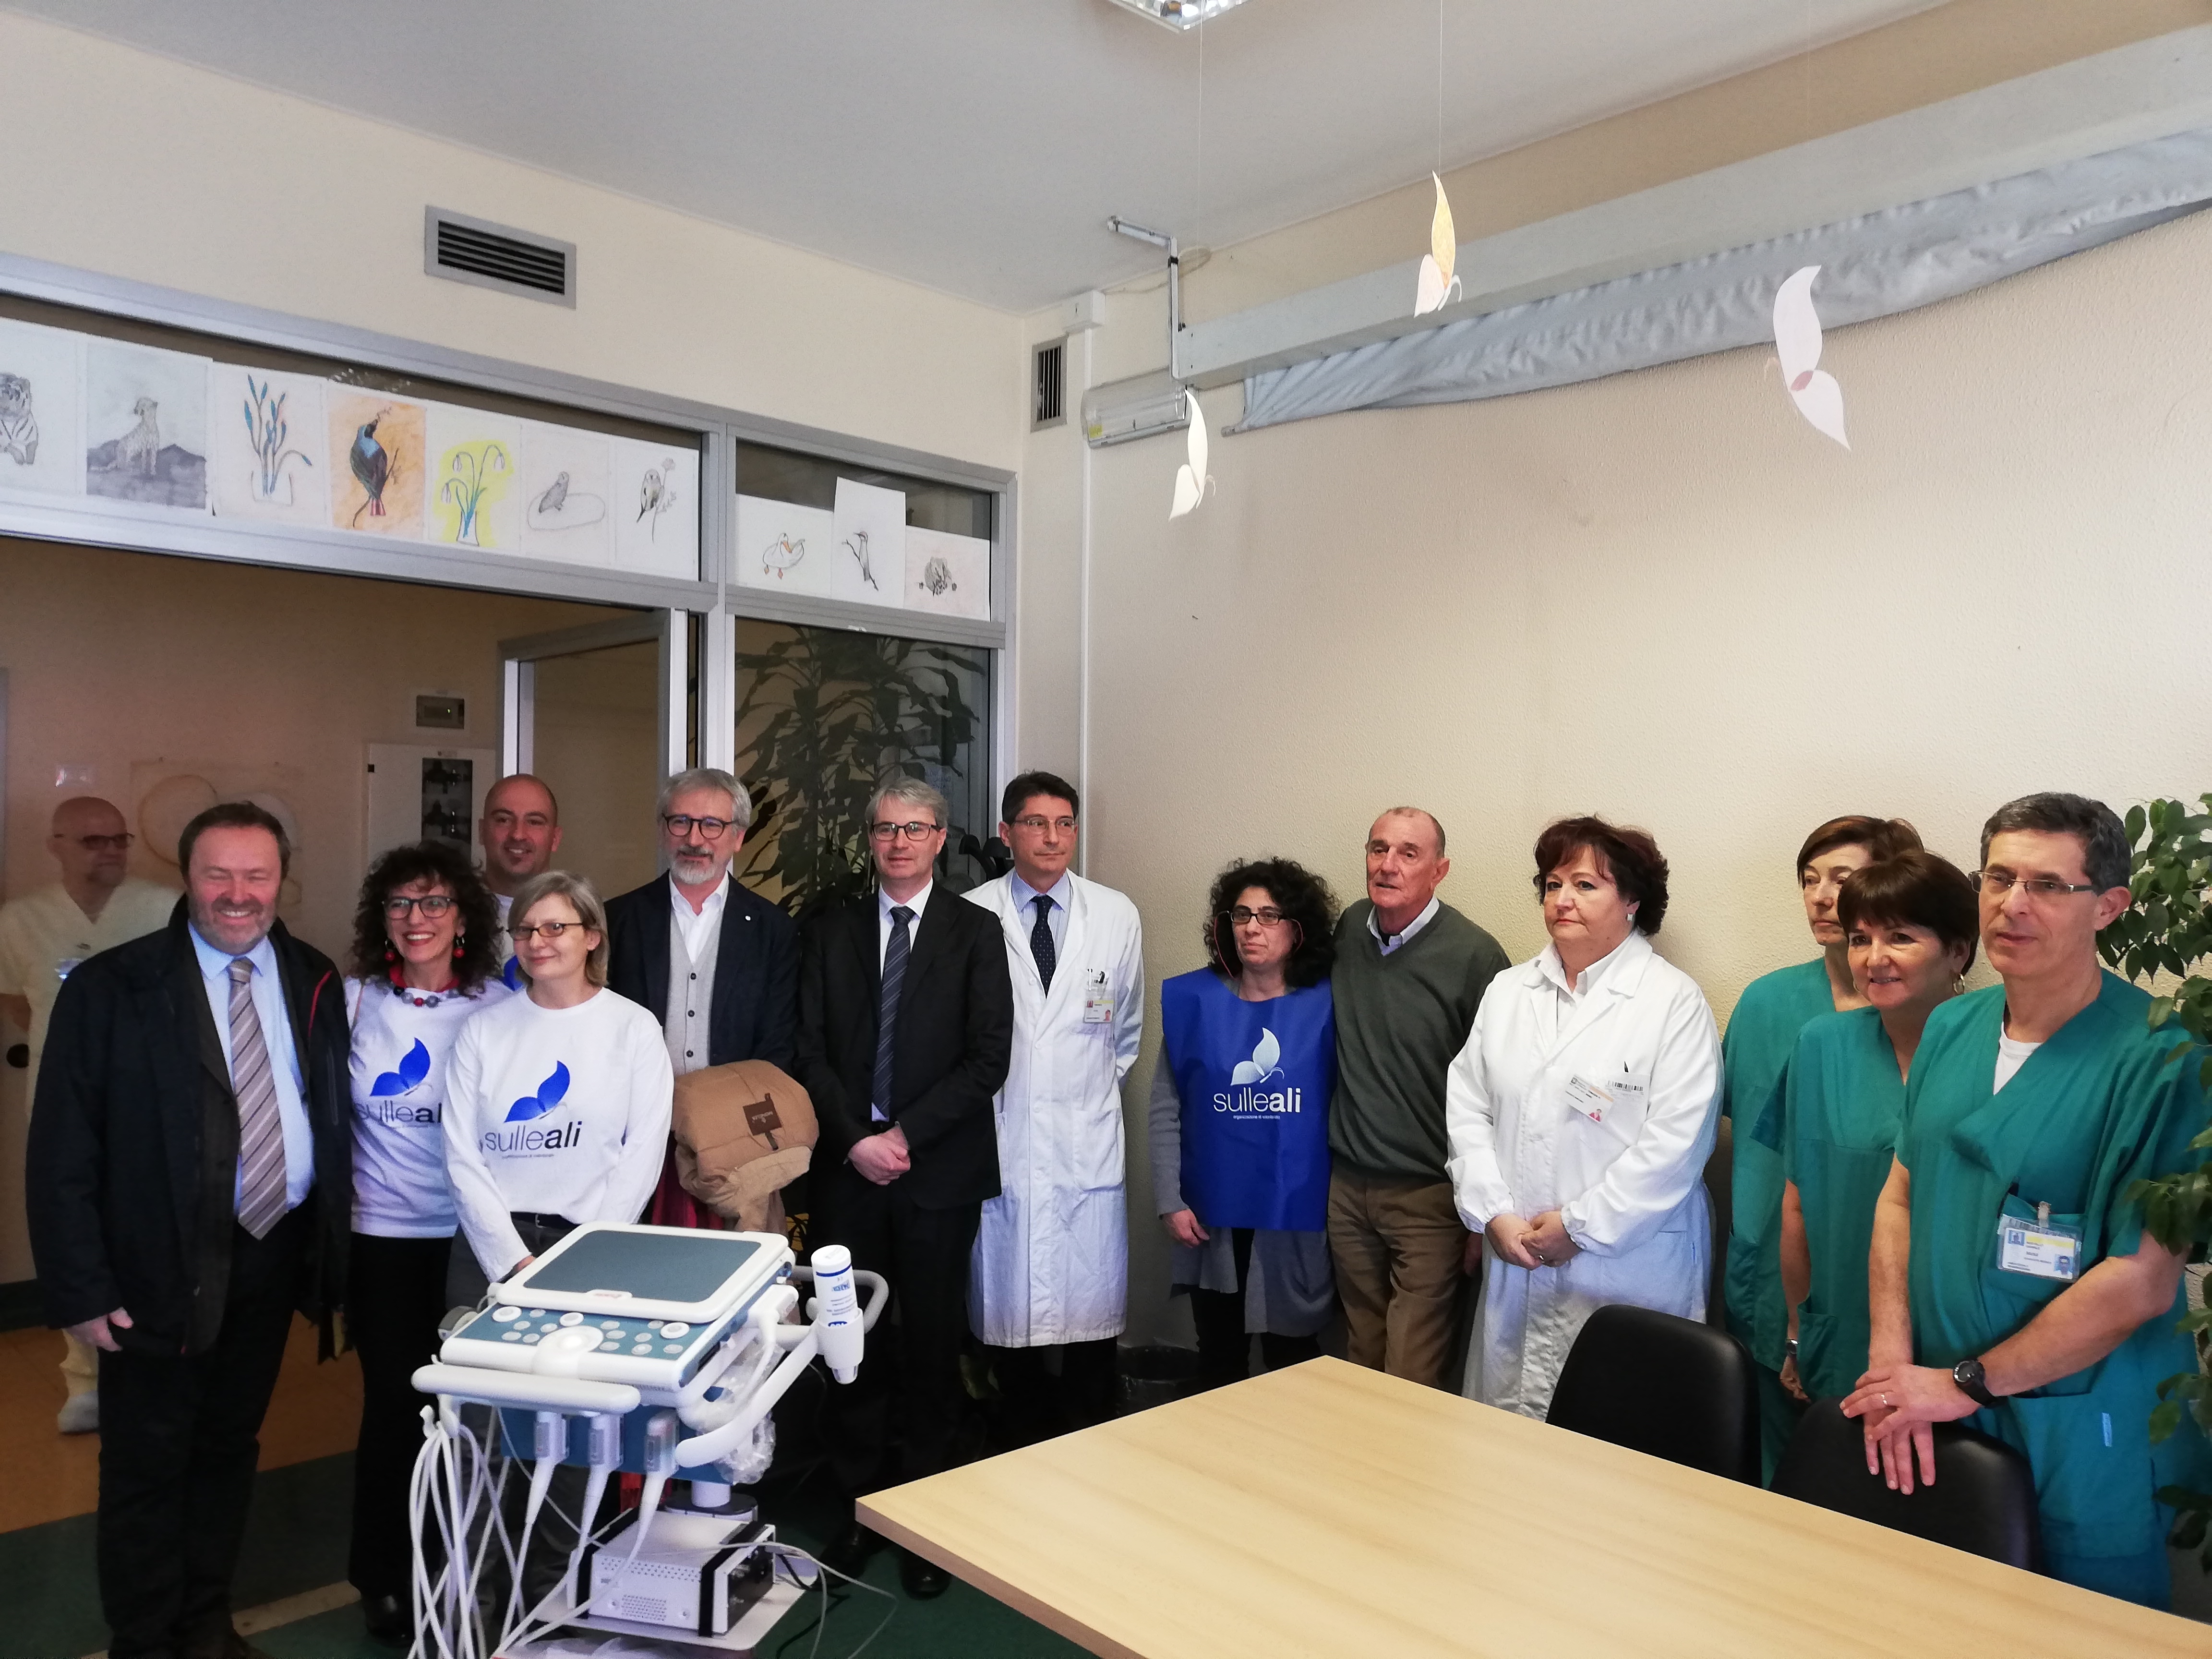 L'Associazione Sulle Ali dona un ecografo portatile per le Cure Palliative dell'Ospedale di Circolo di Varese